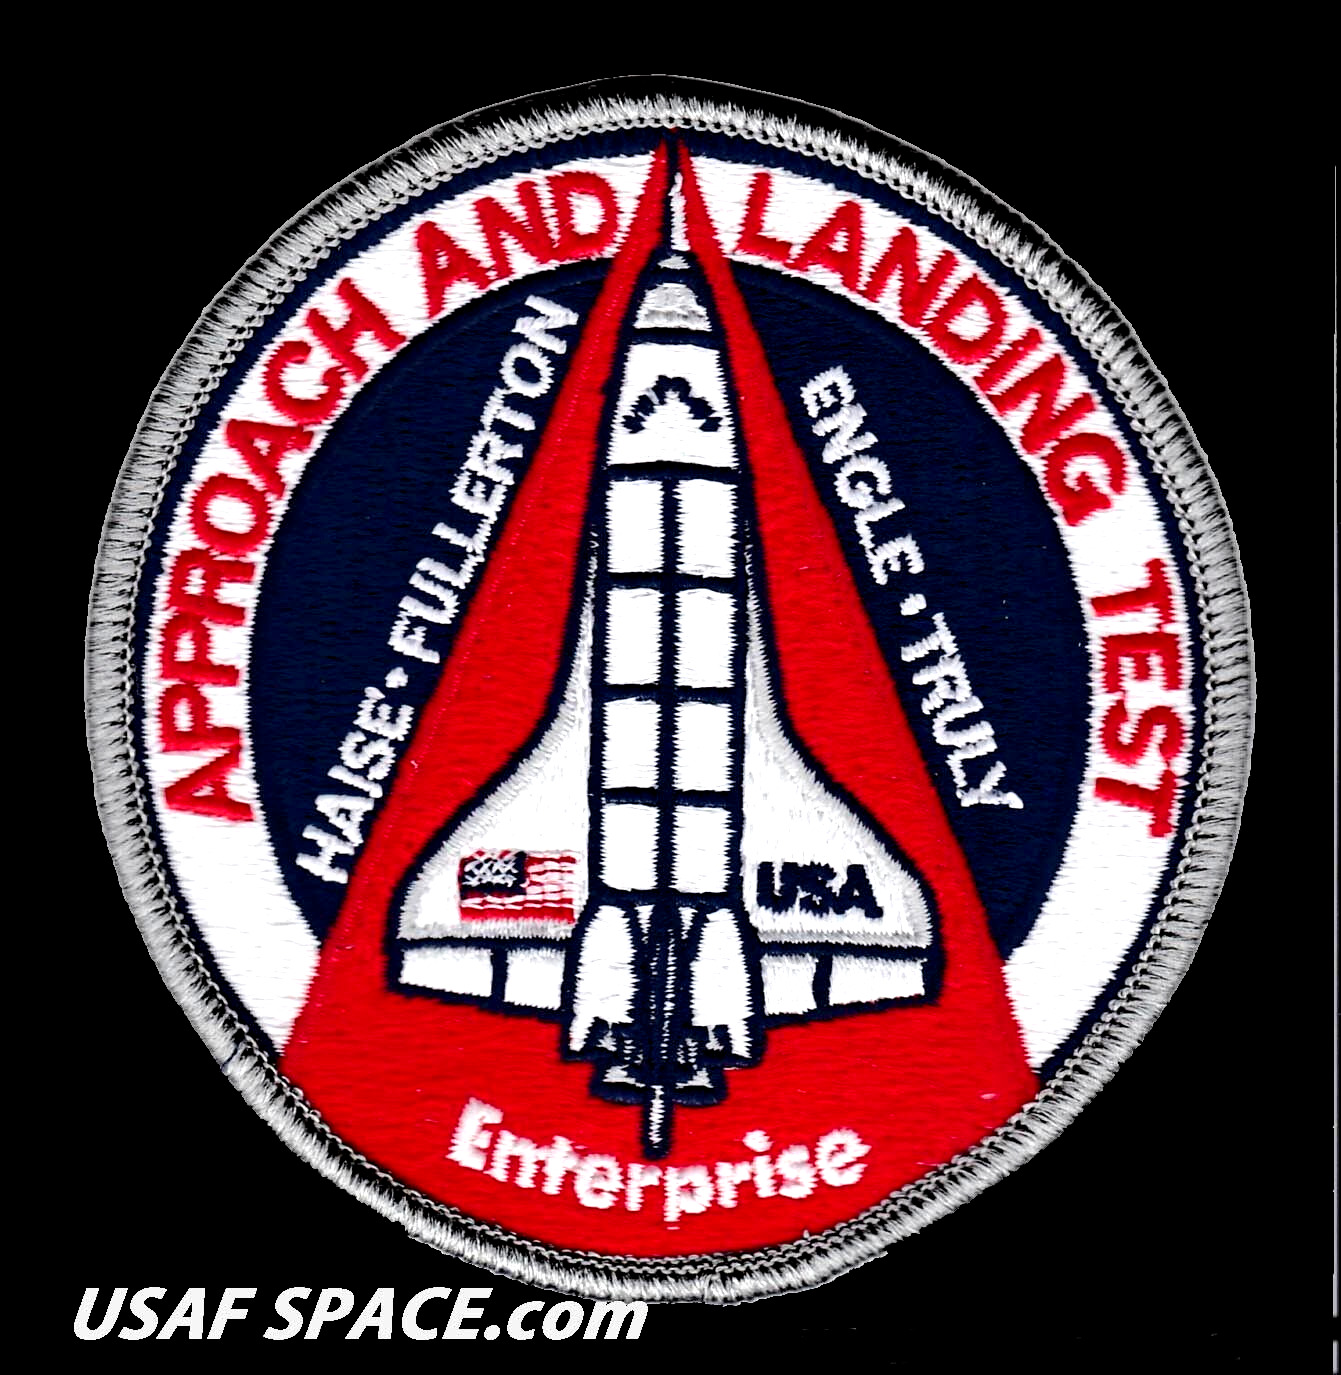 ALT APPROACH AND LANDING TEST ORIGINAL A-B Emblem ENTERPRISE NASA SHUTTLE PATCH